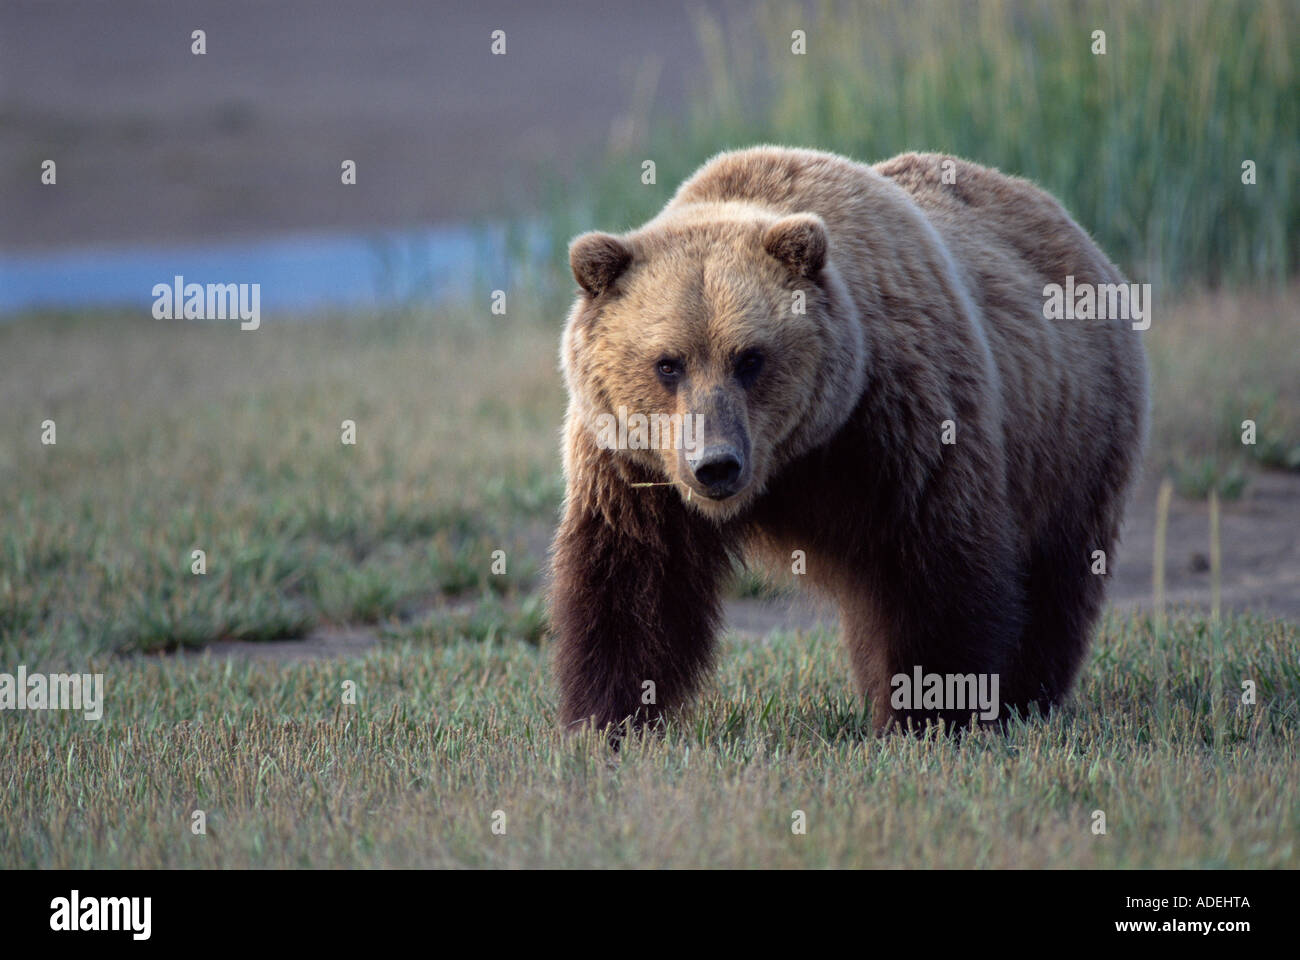 Alaska. Adult Coastal Grizzly Bear. Stock Photo